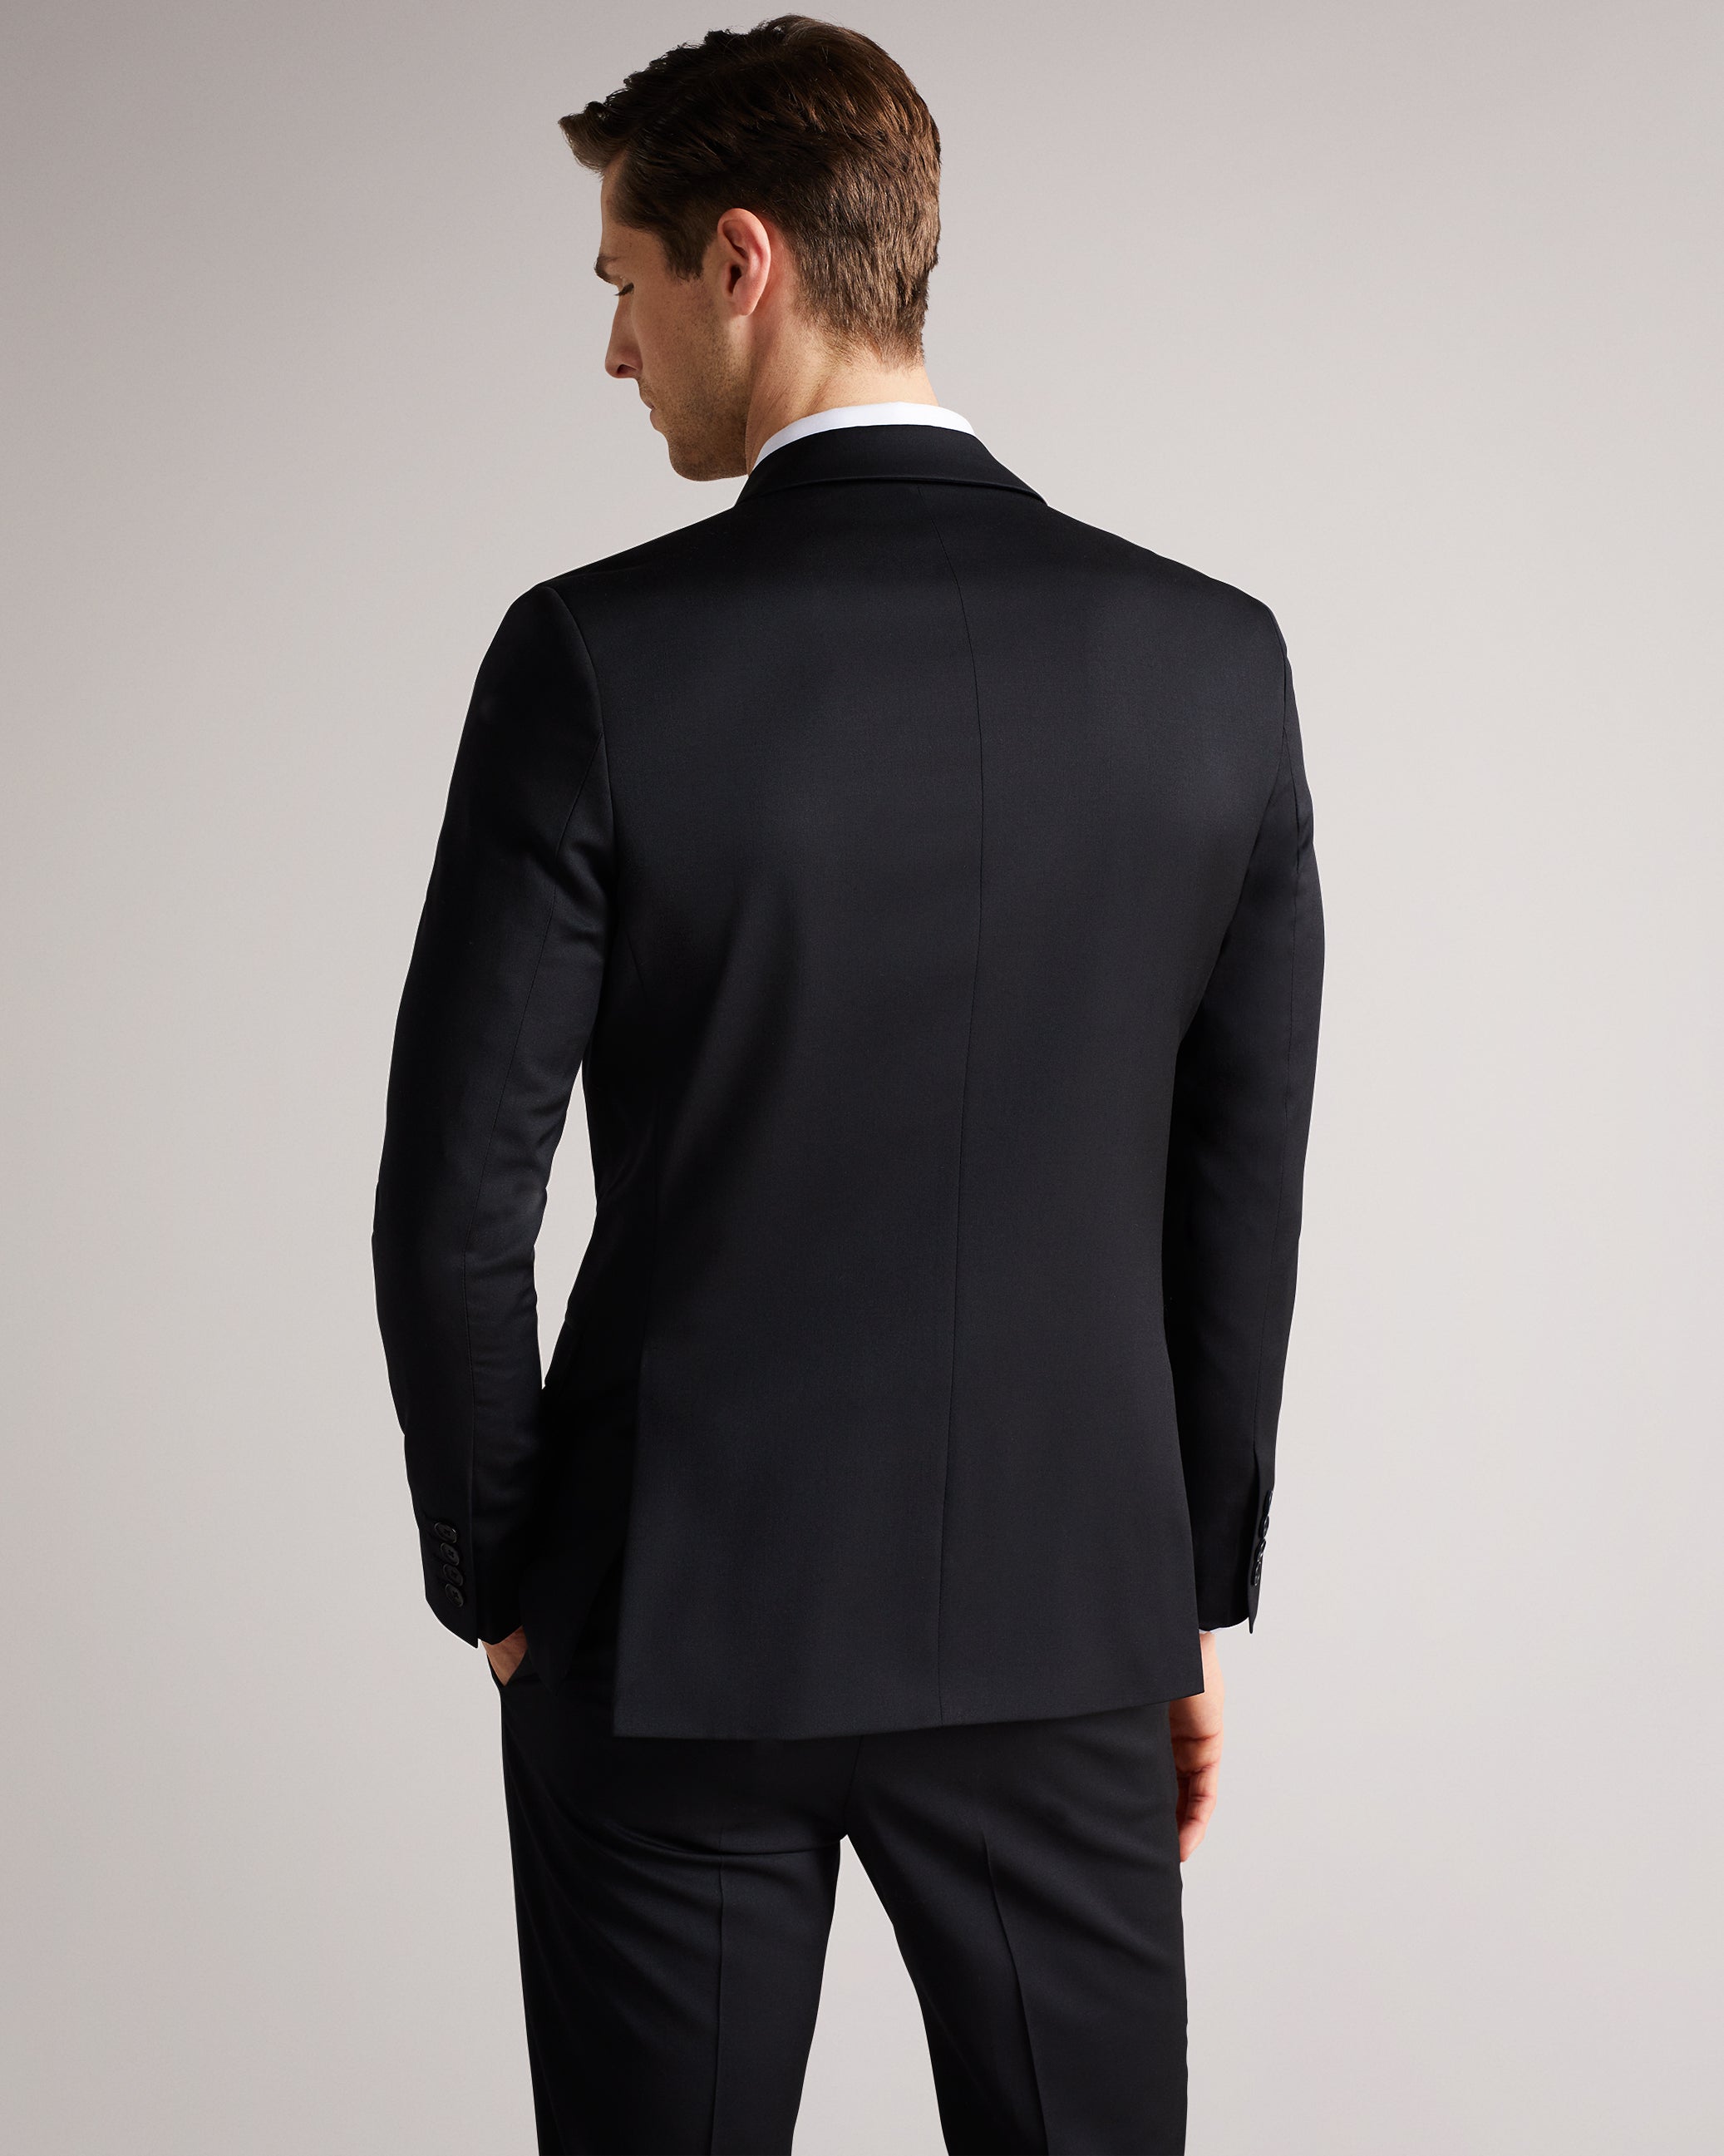 Dundejs Slim Fit Black Twill Suit Jacket Black